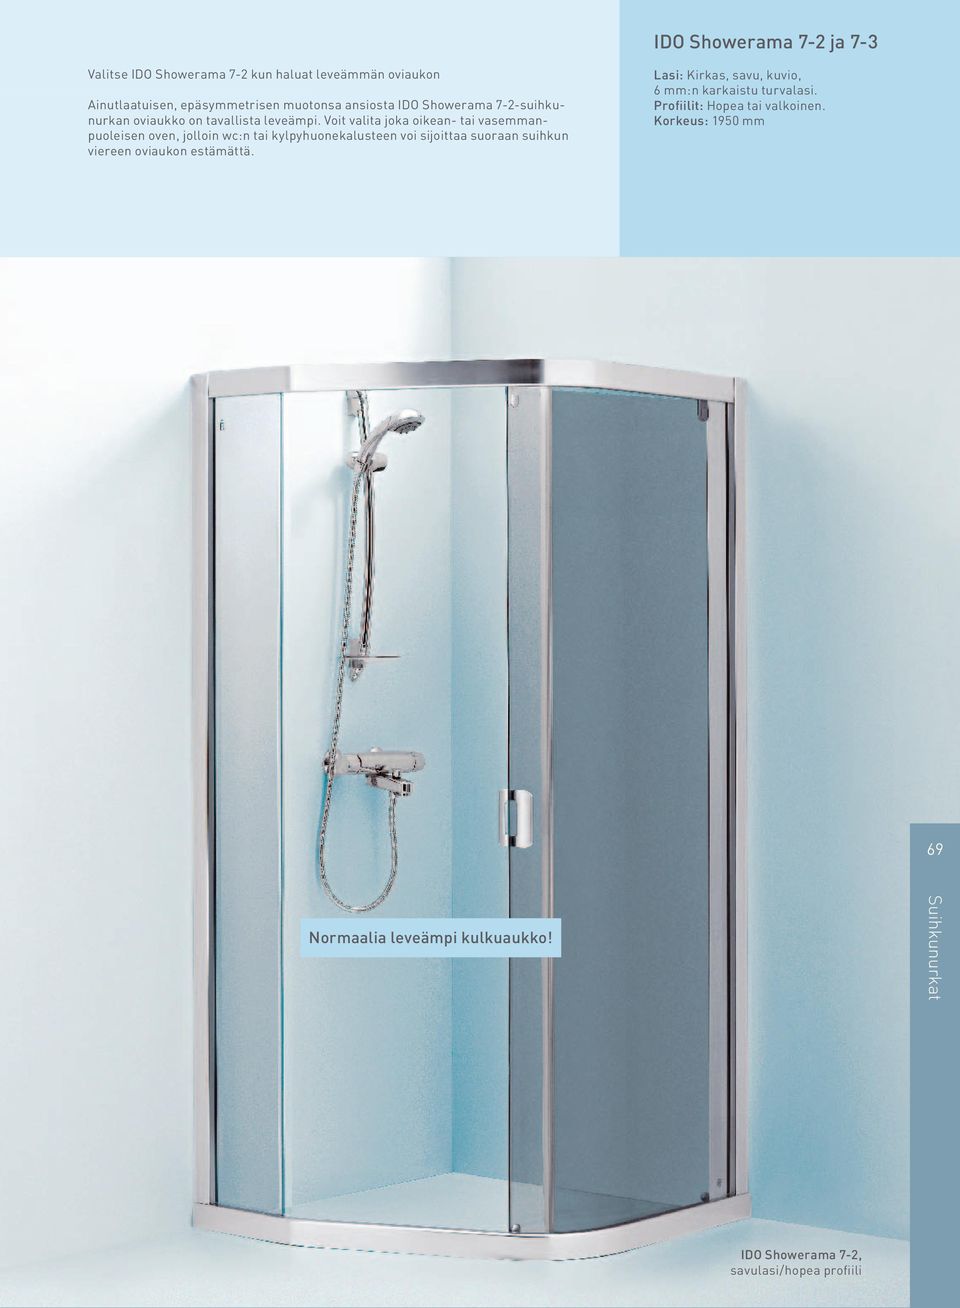 Voit valita joka oikean- tai vasemmanpuoleisen oven, jolloin wc:n tai kylpyhuonekalusteen voi sijoittaa suoraan suihkun viereen